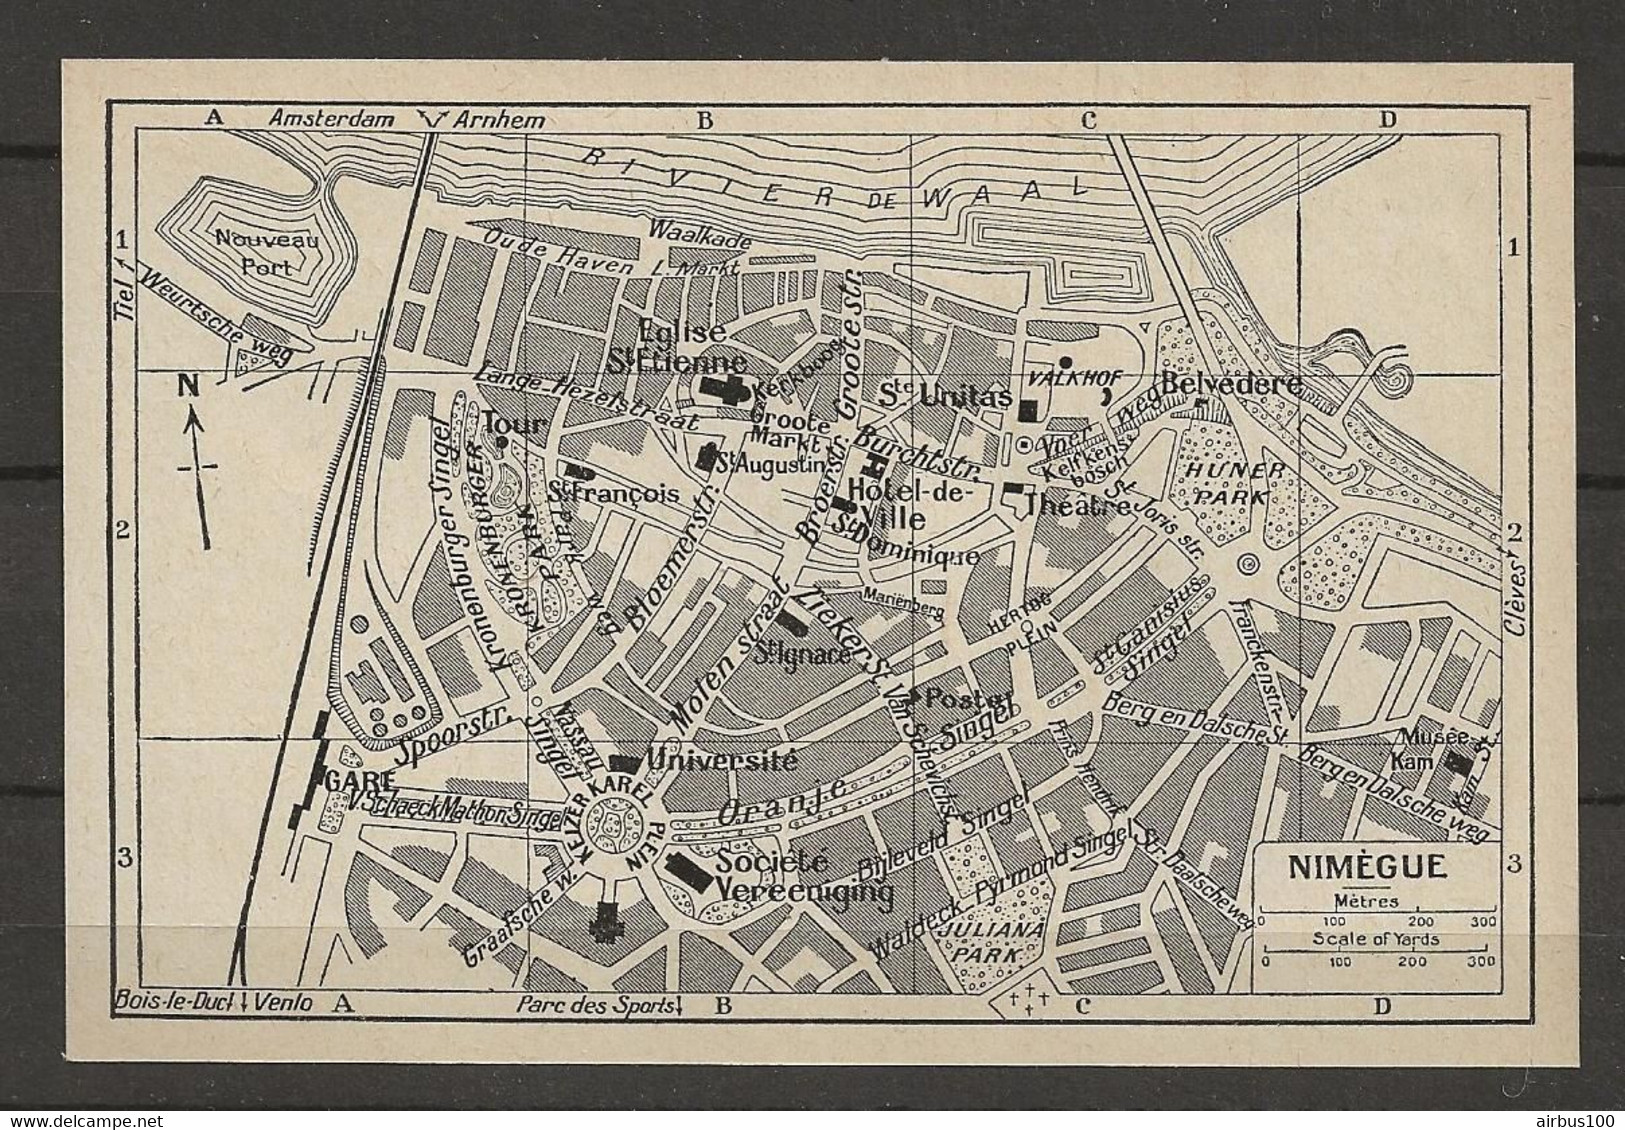 CARTE PLAN 1953 - PAYS BAS - NEDERLANDS - NIMEGUE - SOCIÉTÉ VEREENIGING - NOUVEAU PORT - Cartes Topographiques